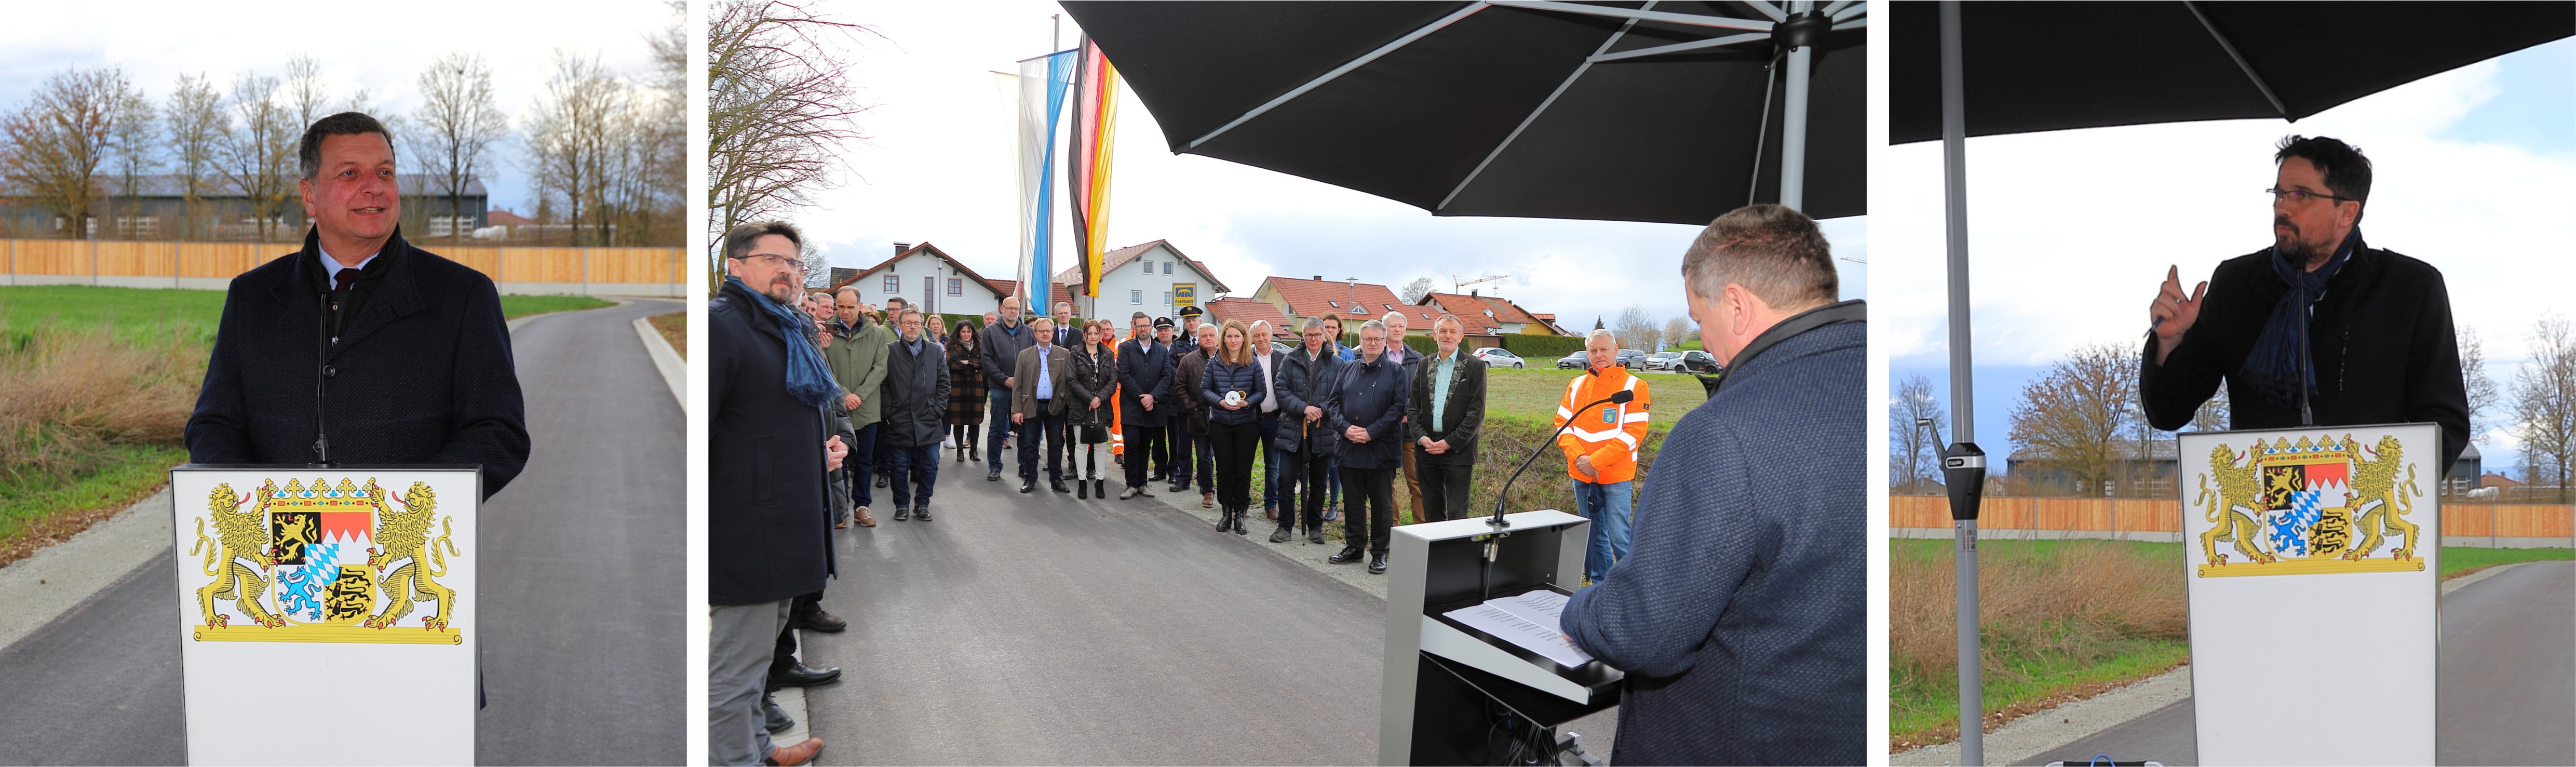 Informationen zum neuen Geh- und Radweg gaben Verkehrsminister Christian Bernreiter (l.) und Bürgermeister Adalbert Hösl (r.)